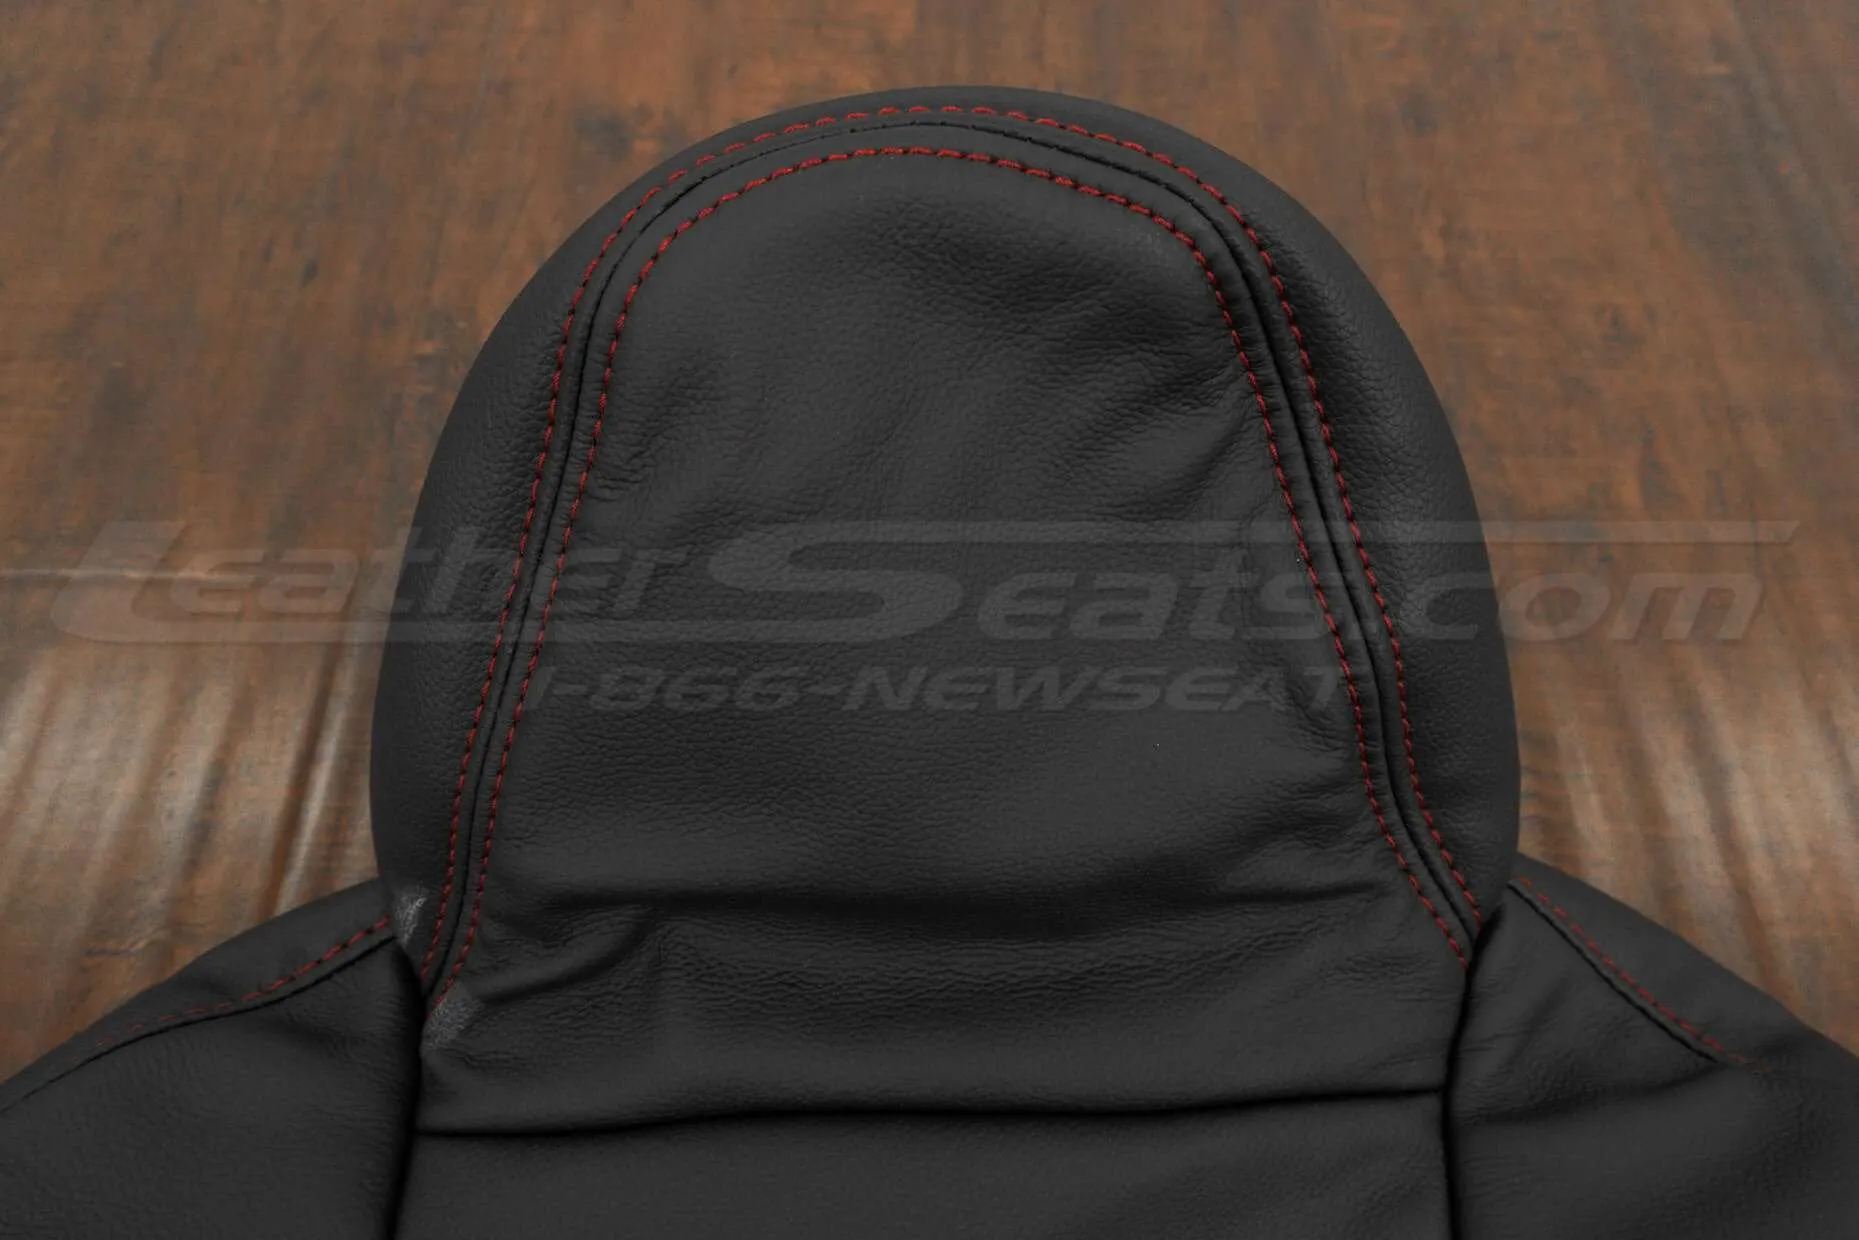 Honda S2000 Roadster Upholstery Kit - Black & Red - Headrest close-up